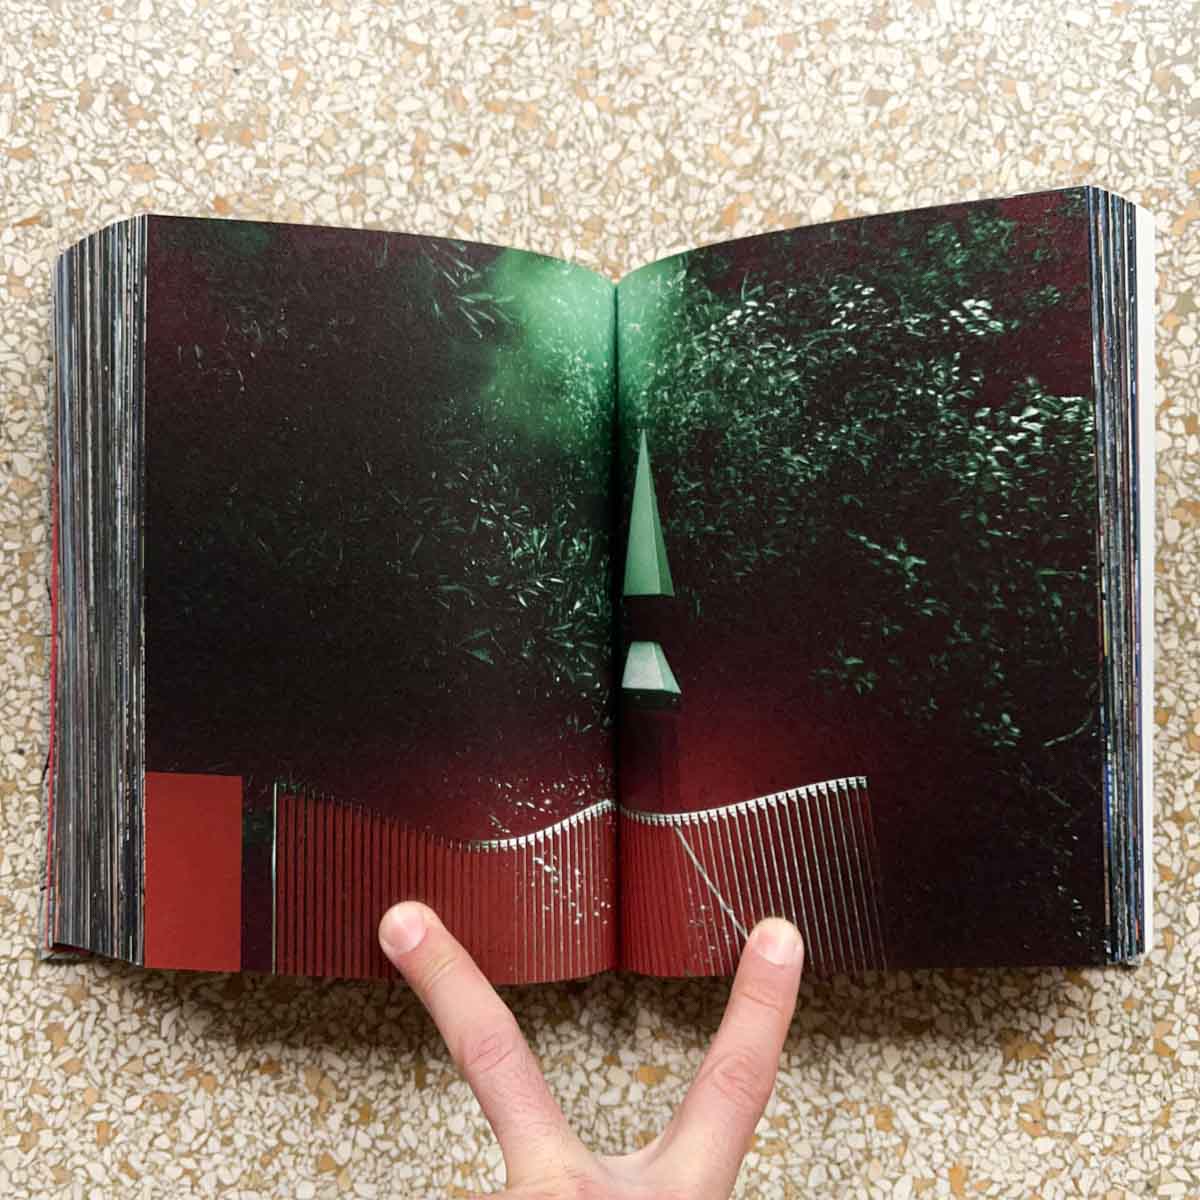 Vortex by Kikuji Kawada - Tipi bookshop